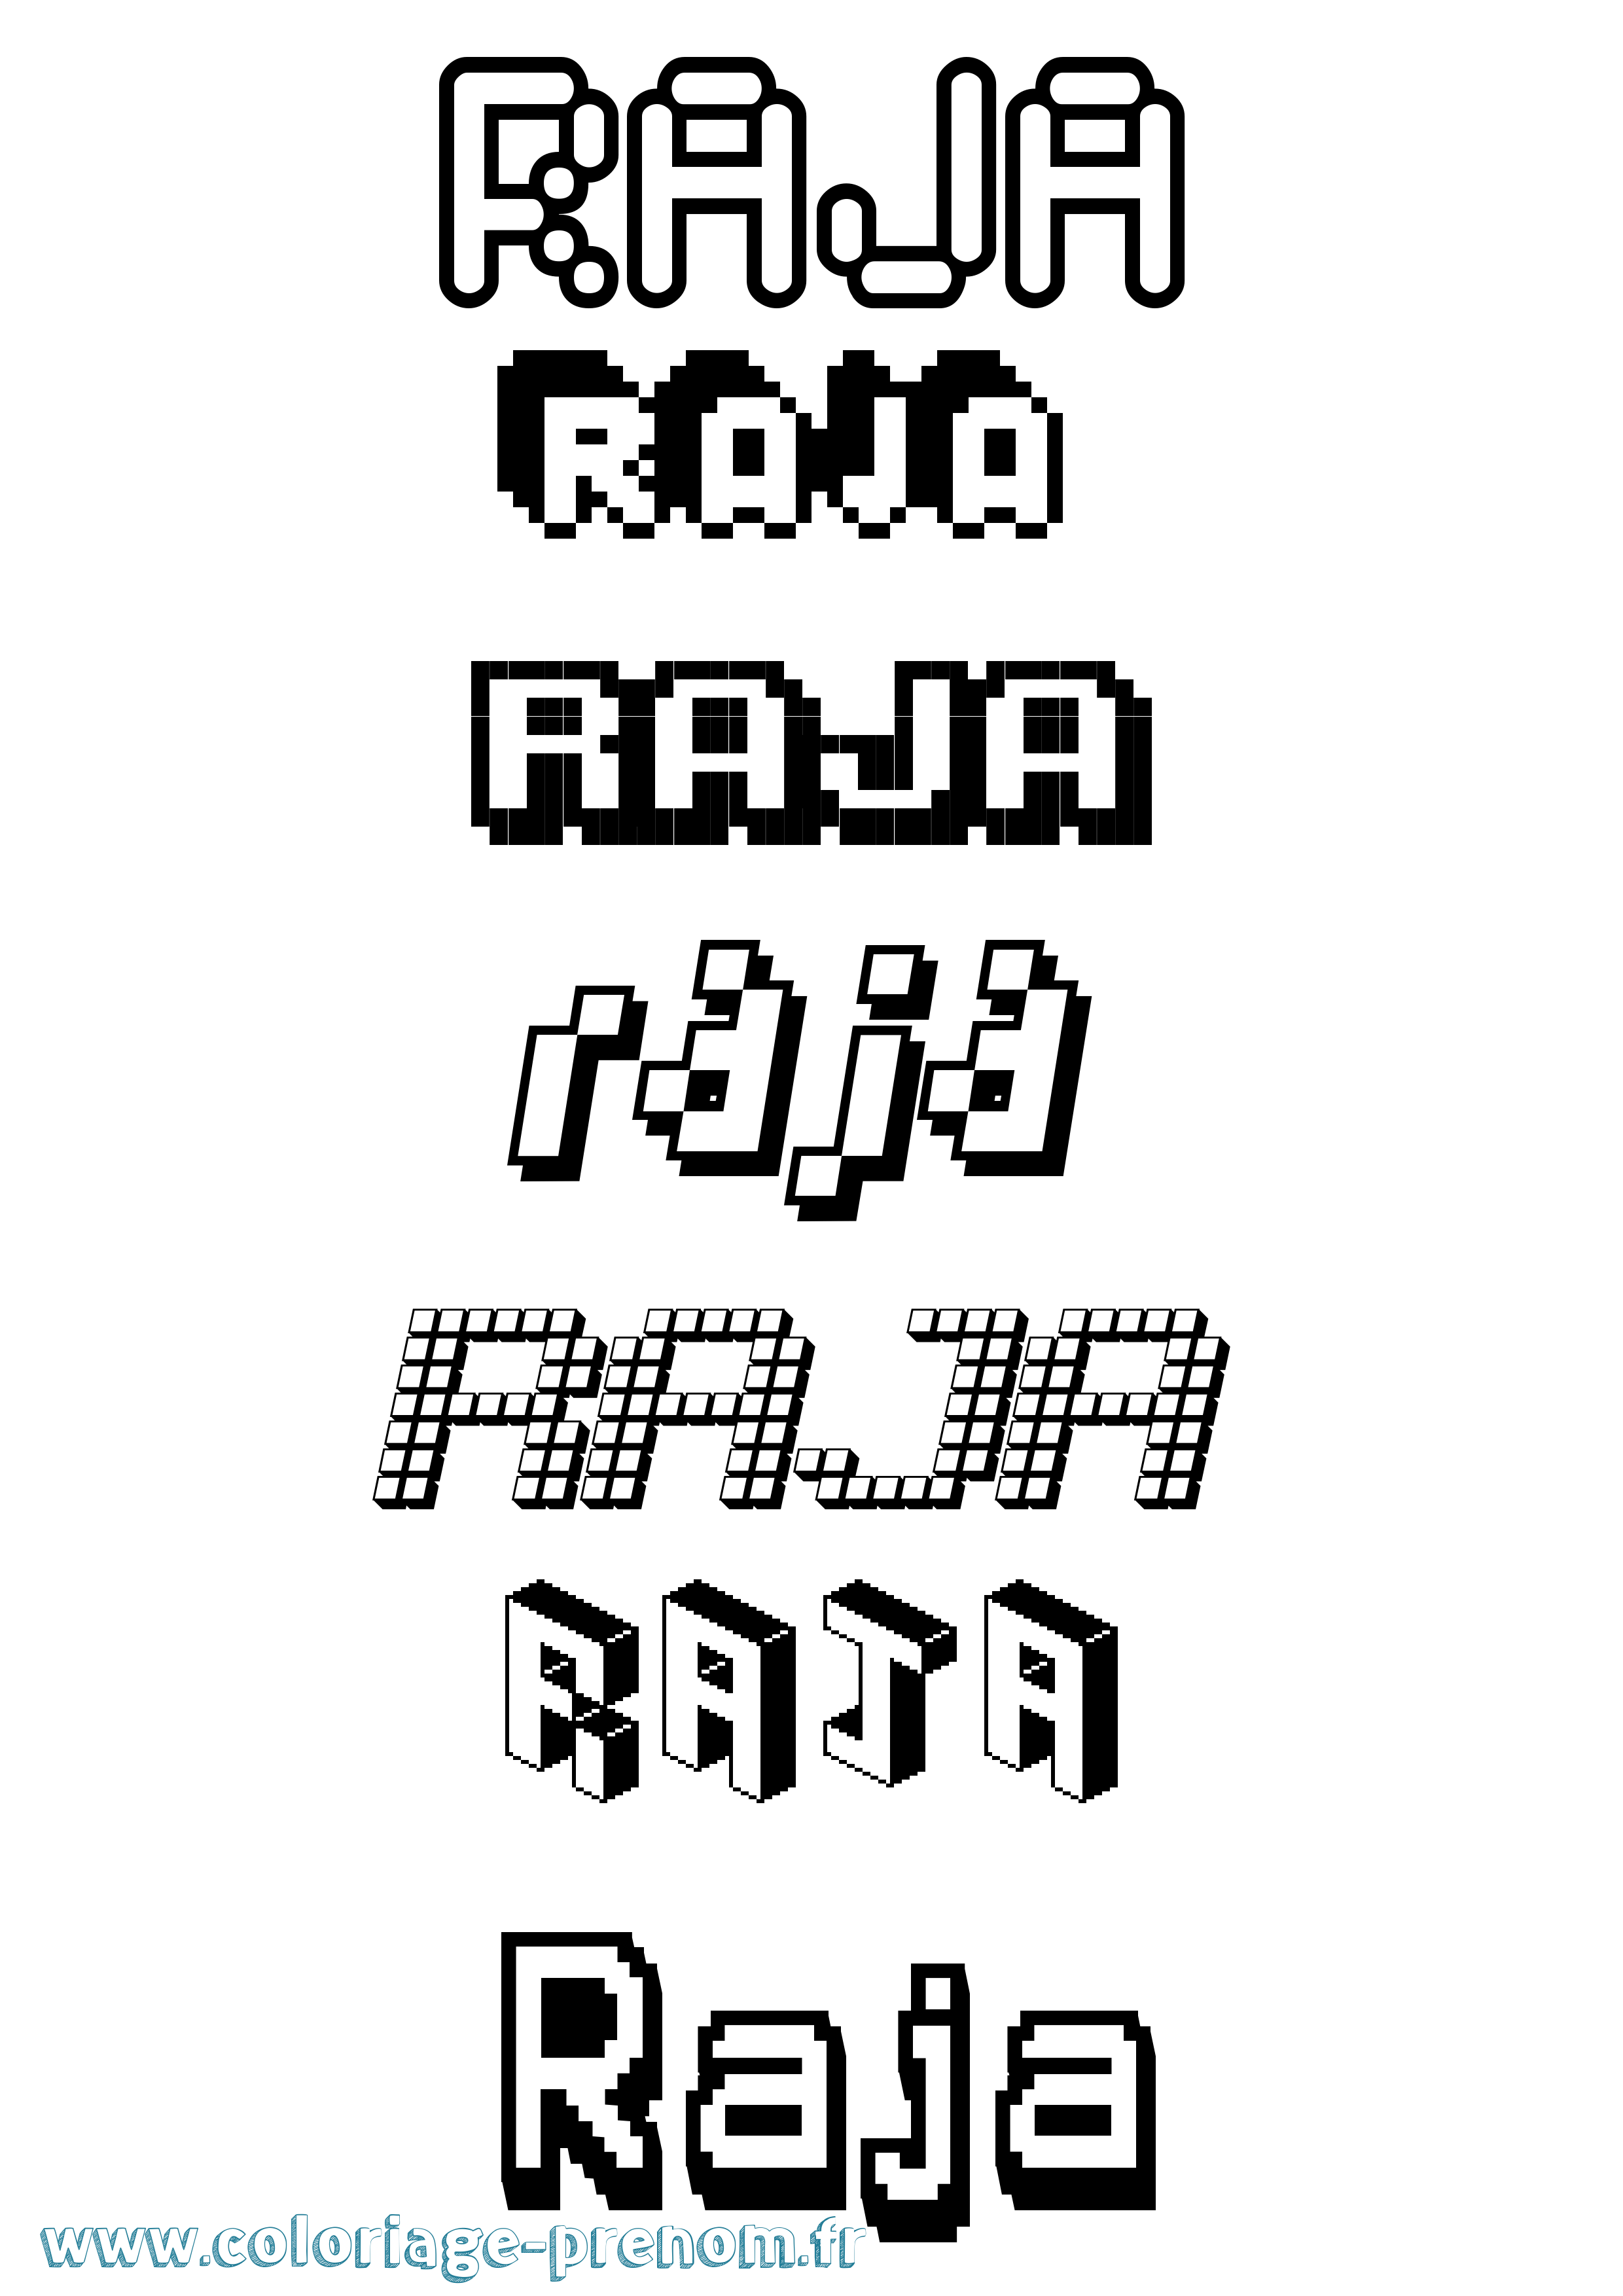 Coloriage prénom Raja Pixel